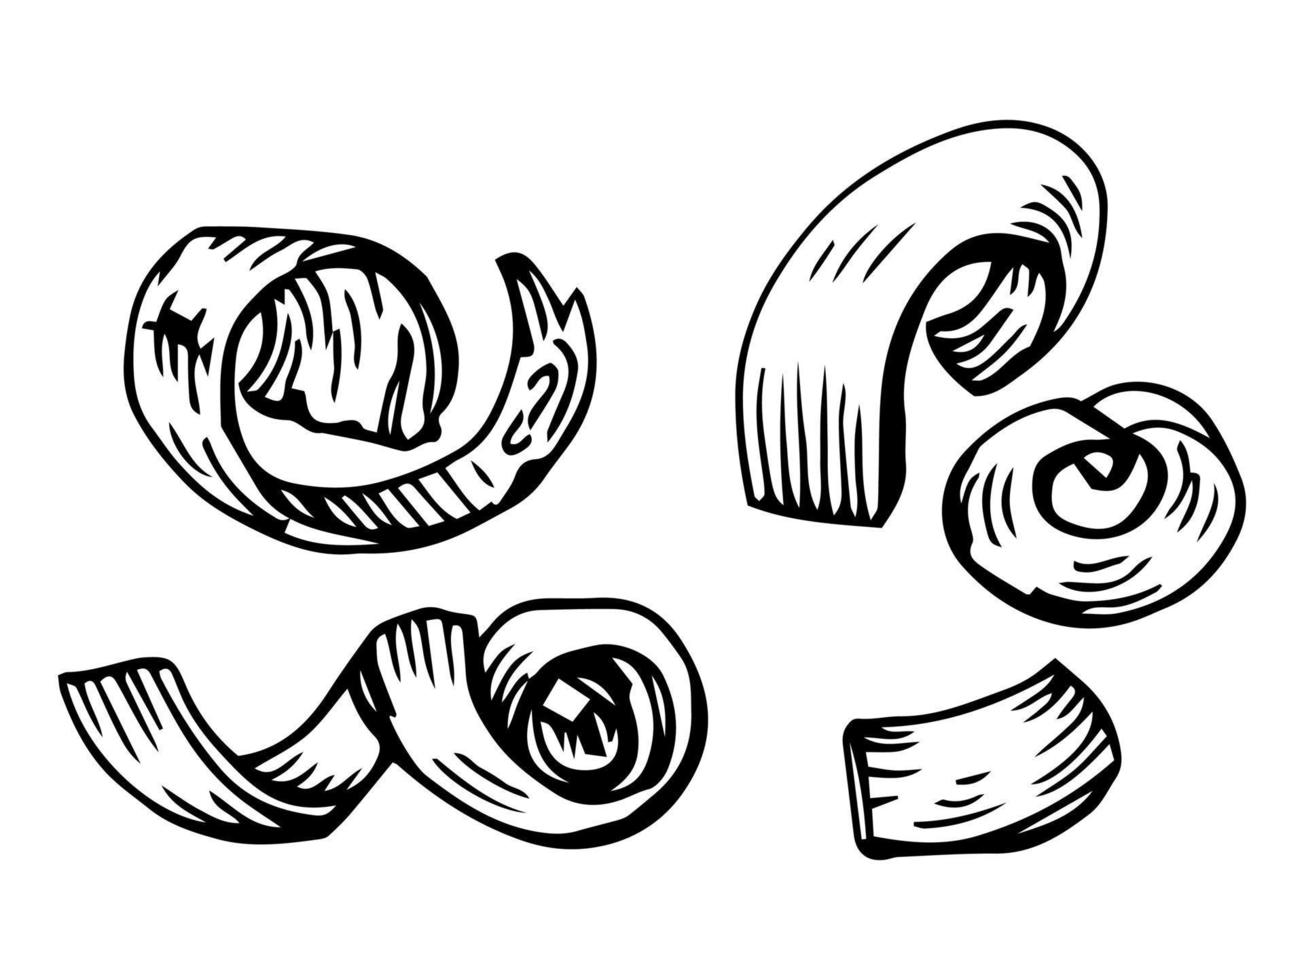 Holzspäne oder Späne. lockige Holzschale aus Schnitz- und Tischlerarbeiten, Nahaufnahme, Detailzeichnung. holzindustrie themenorientierte isolierte handgezeichnete skizzenillustration auf weißem hintergrund. vektor